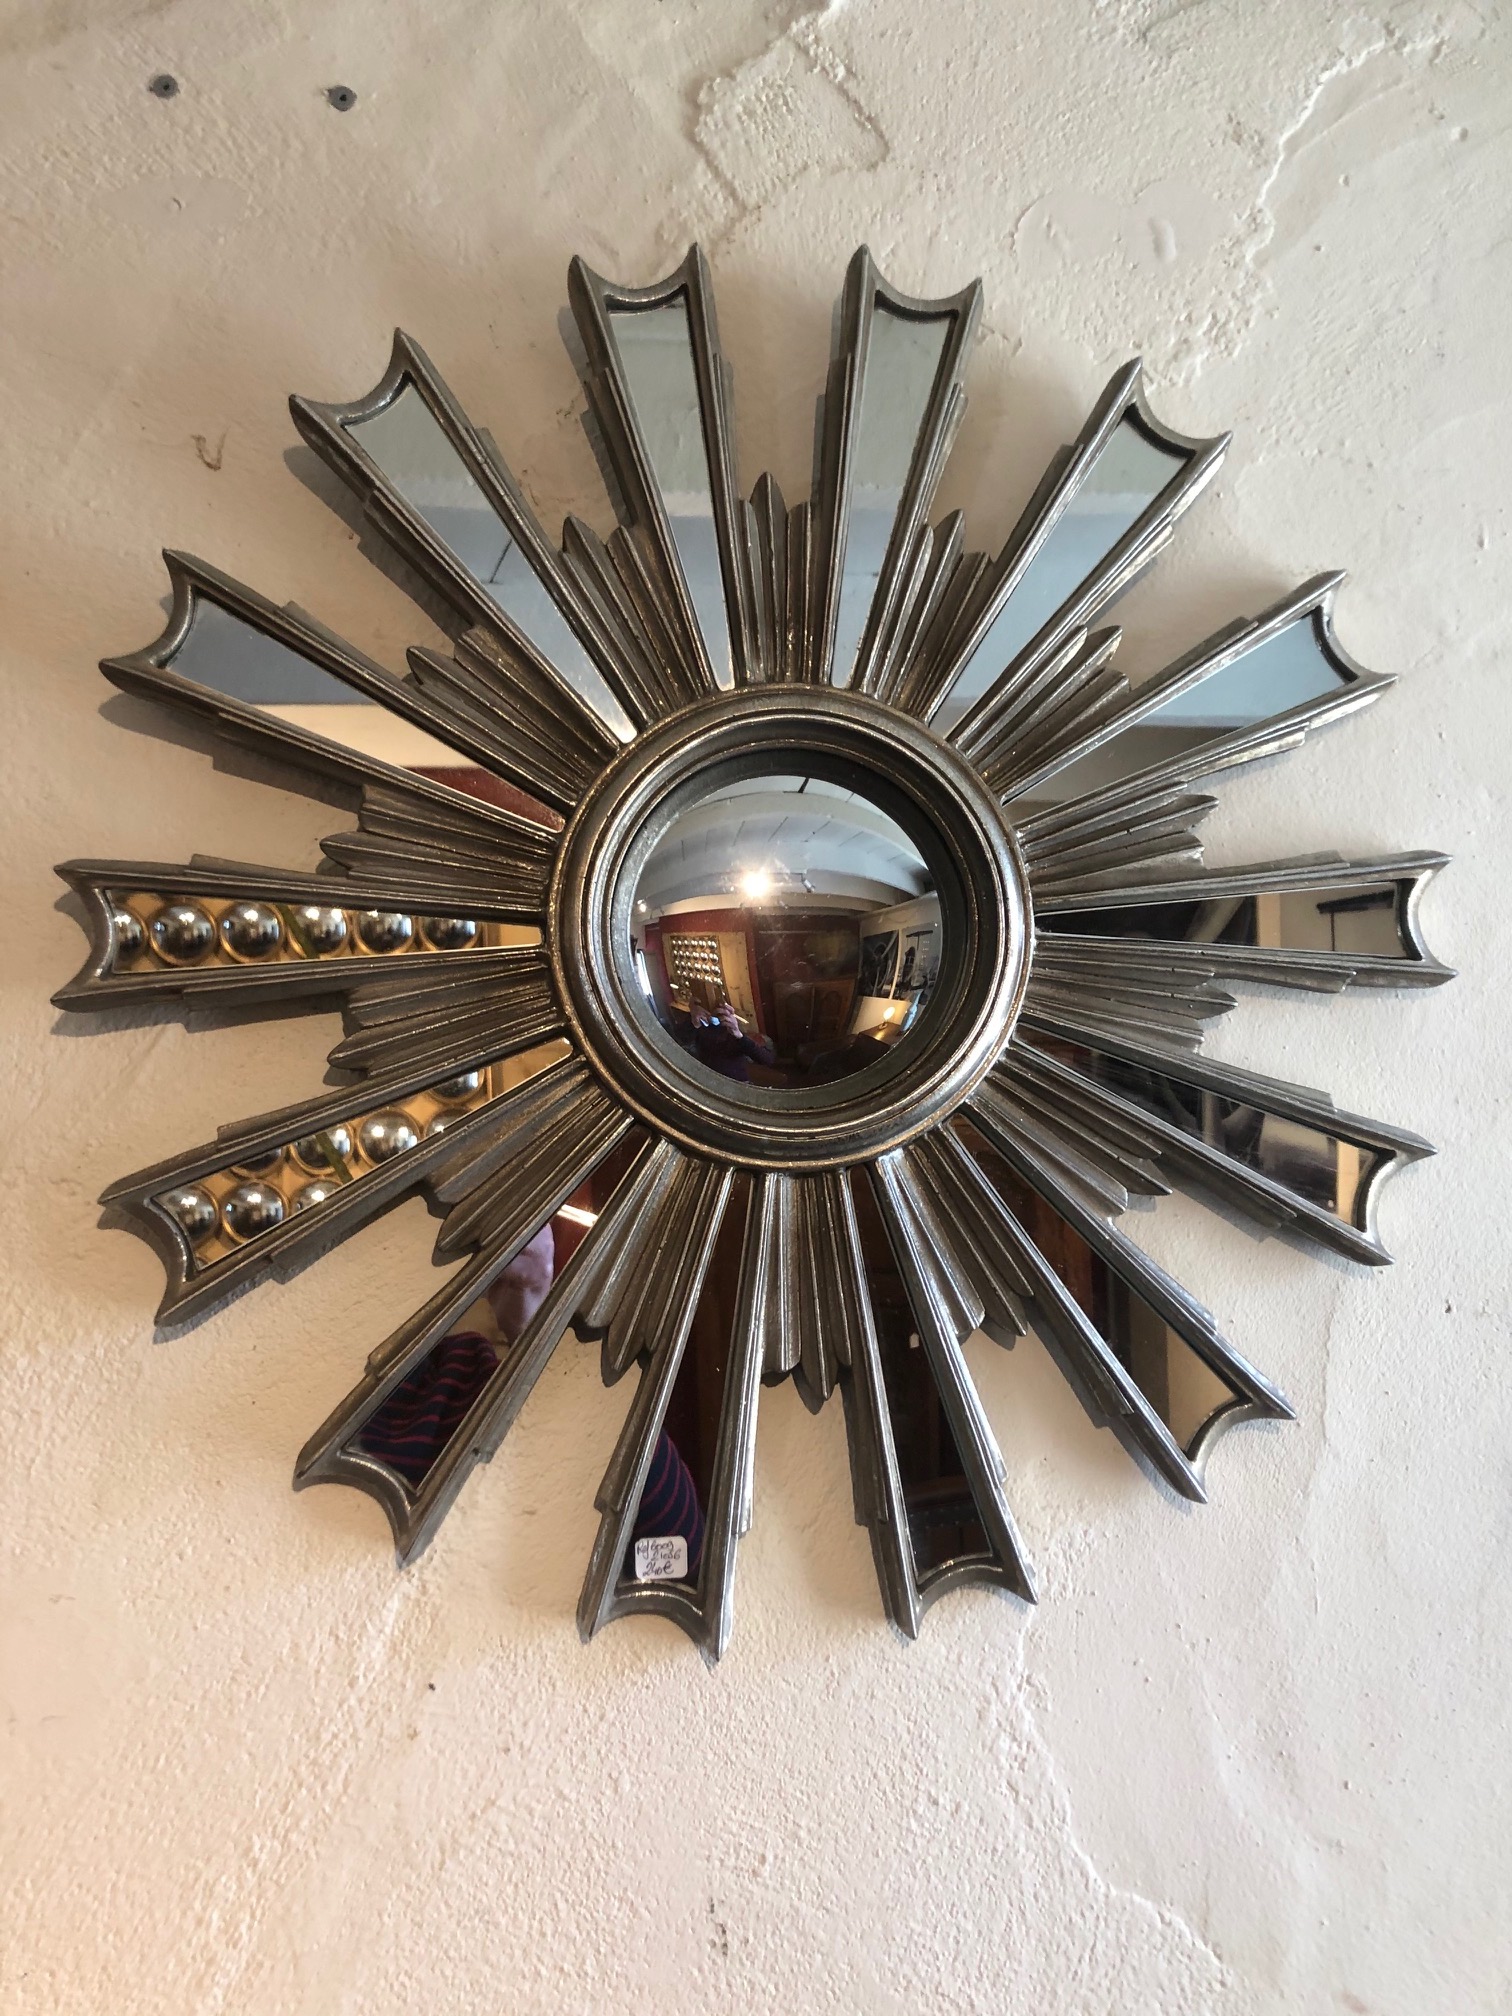 Miroir de sorcière - La Grange, Meubles neufs et anciens au Conquet